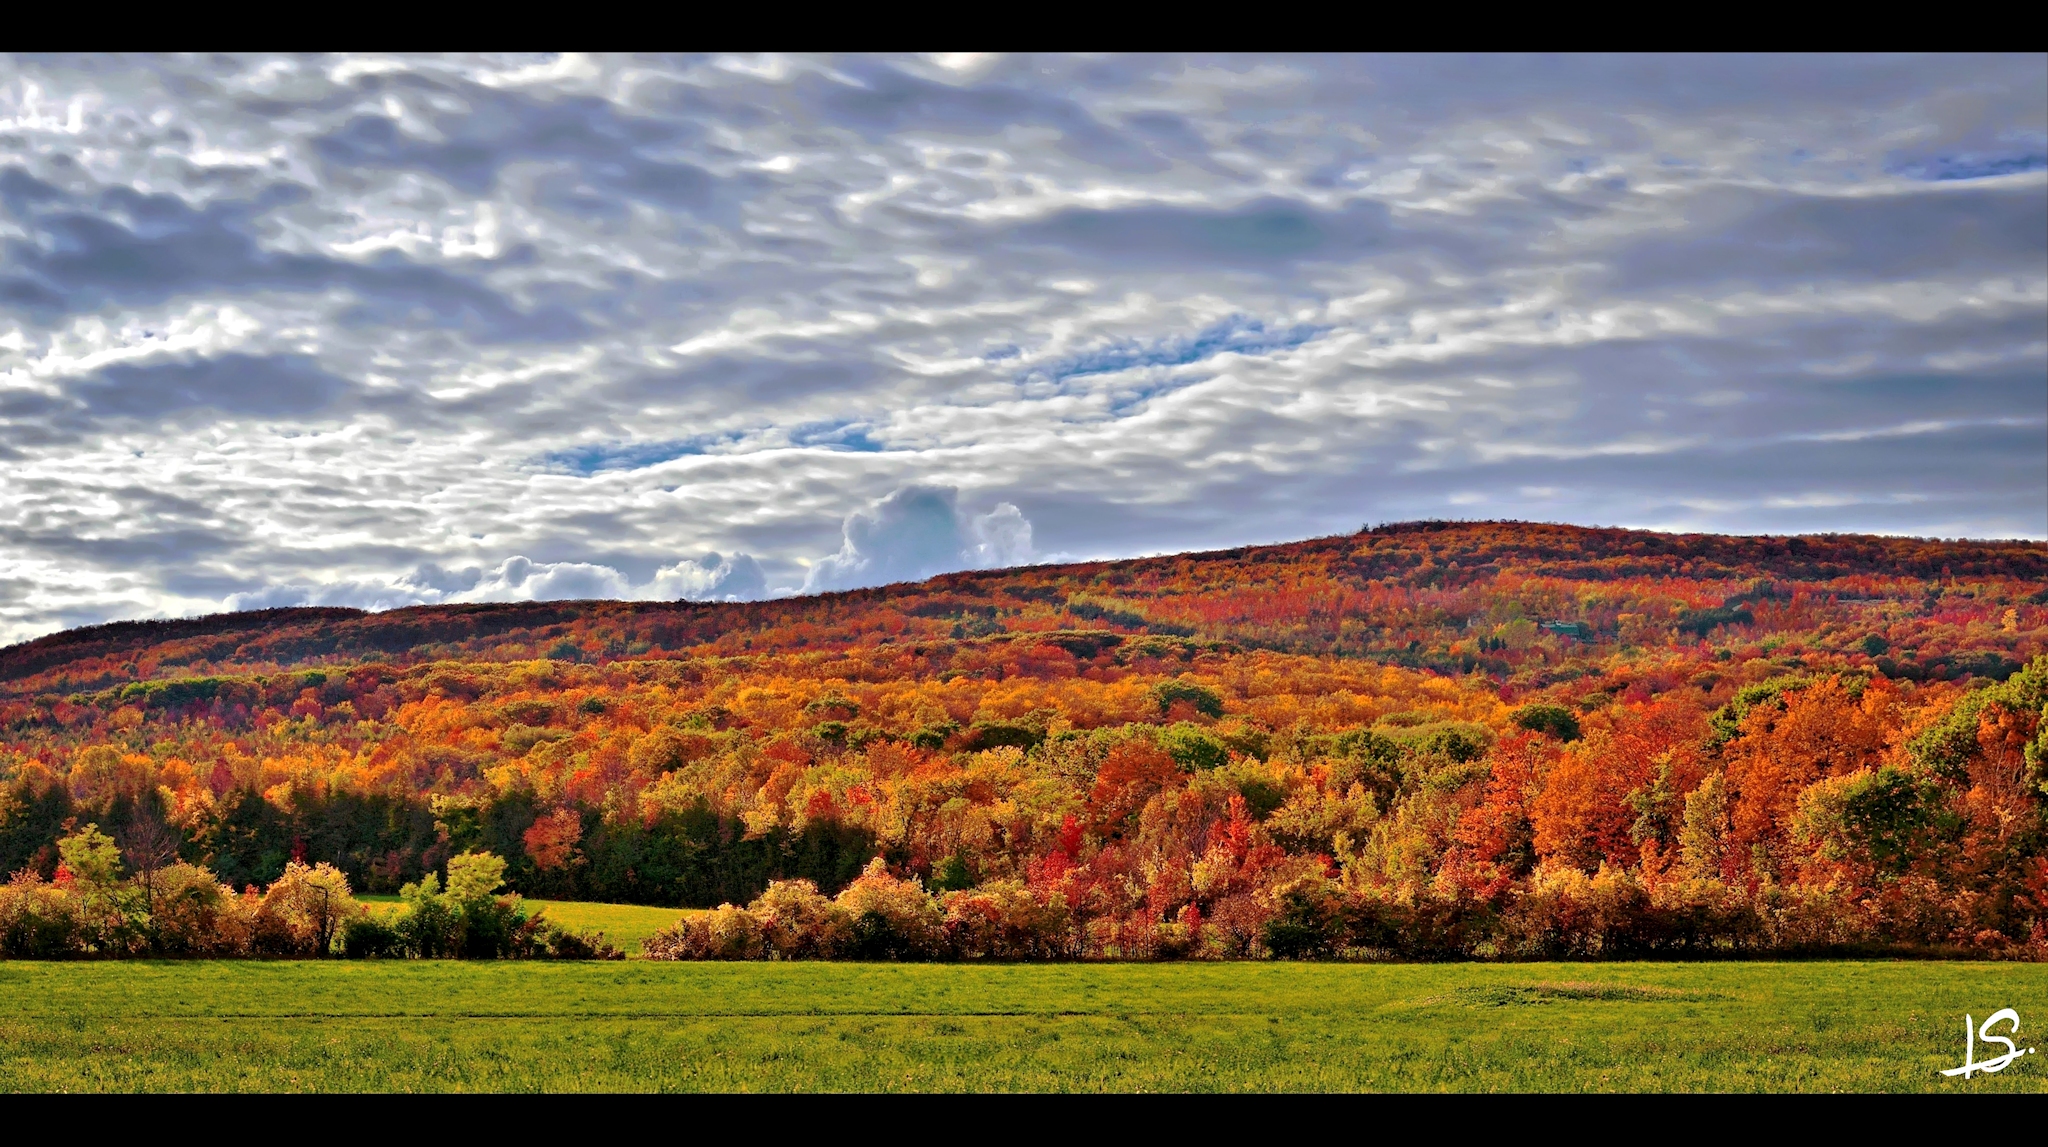 Autumn colors along the niagara escarpment - stitched panorama - a